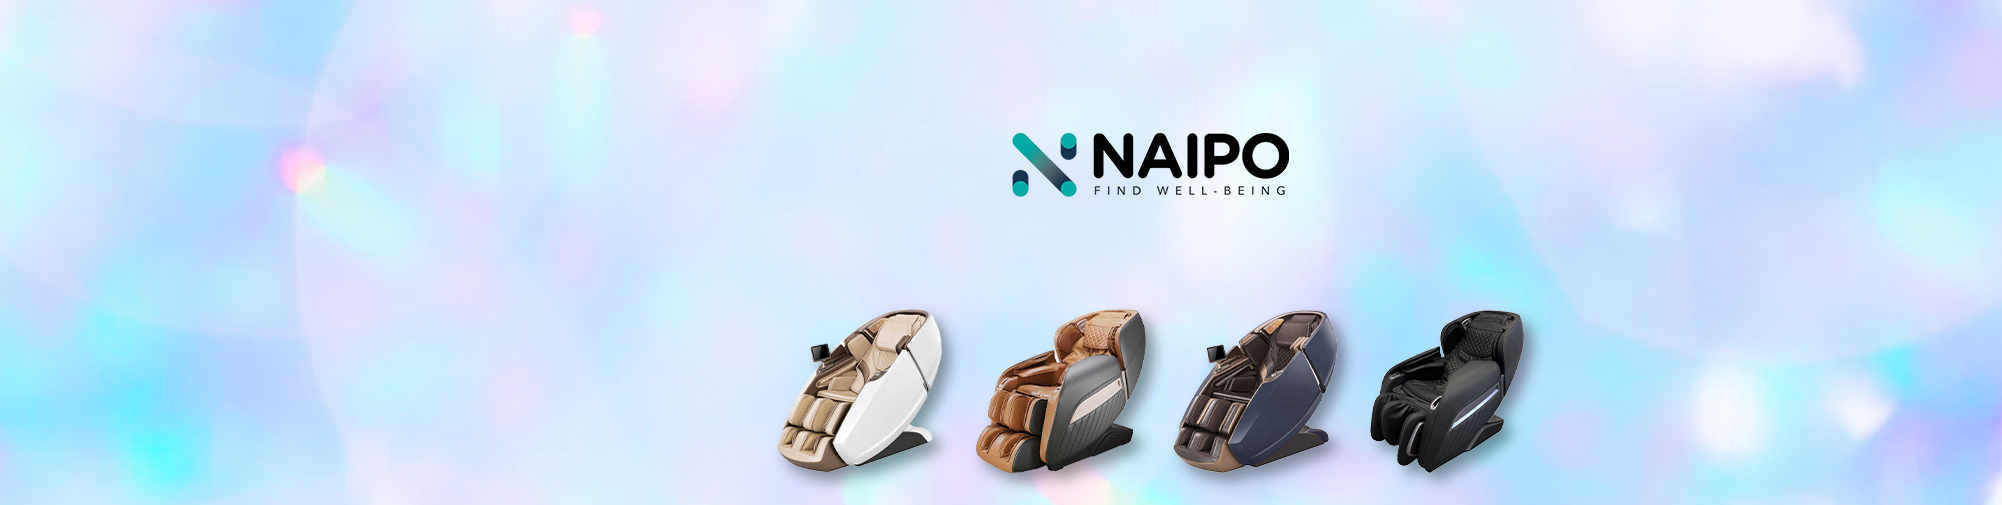 NAIPO – Sản phẩm massage cho toàn thế giới | Thế giới ghế massage